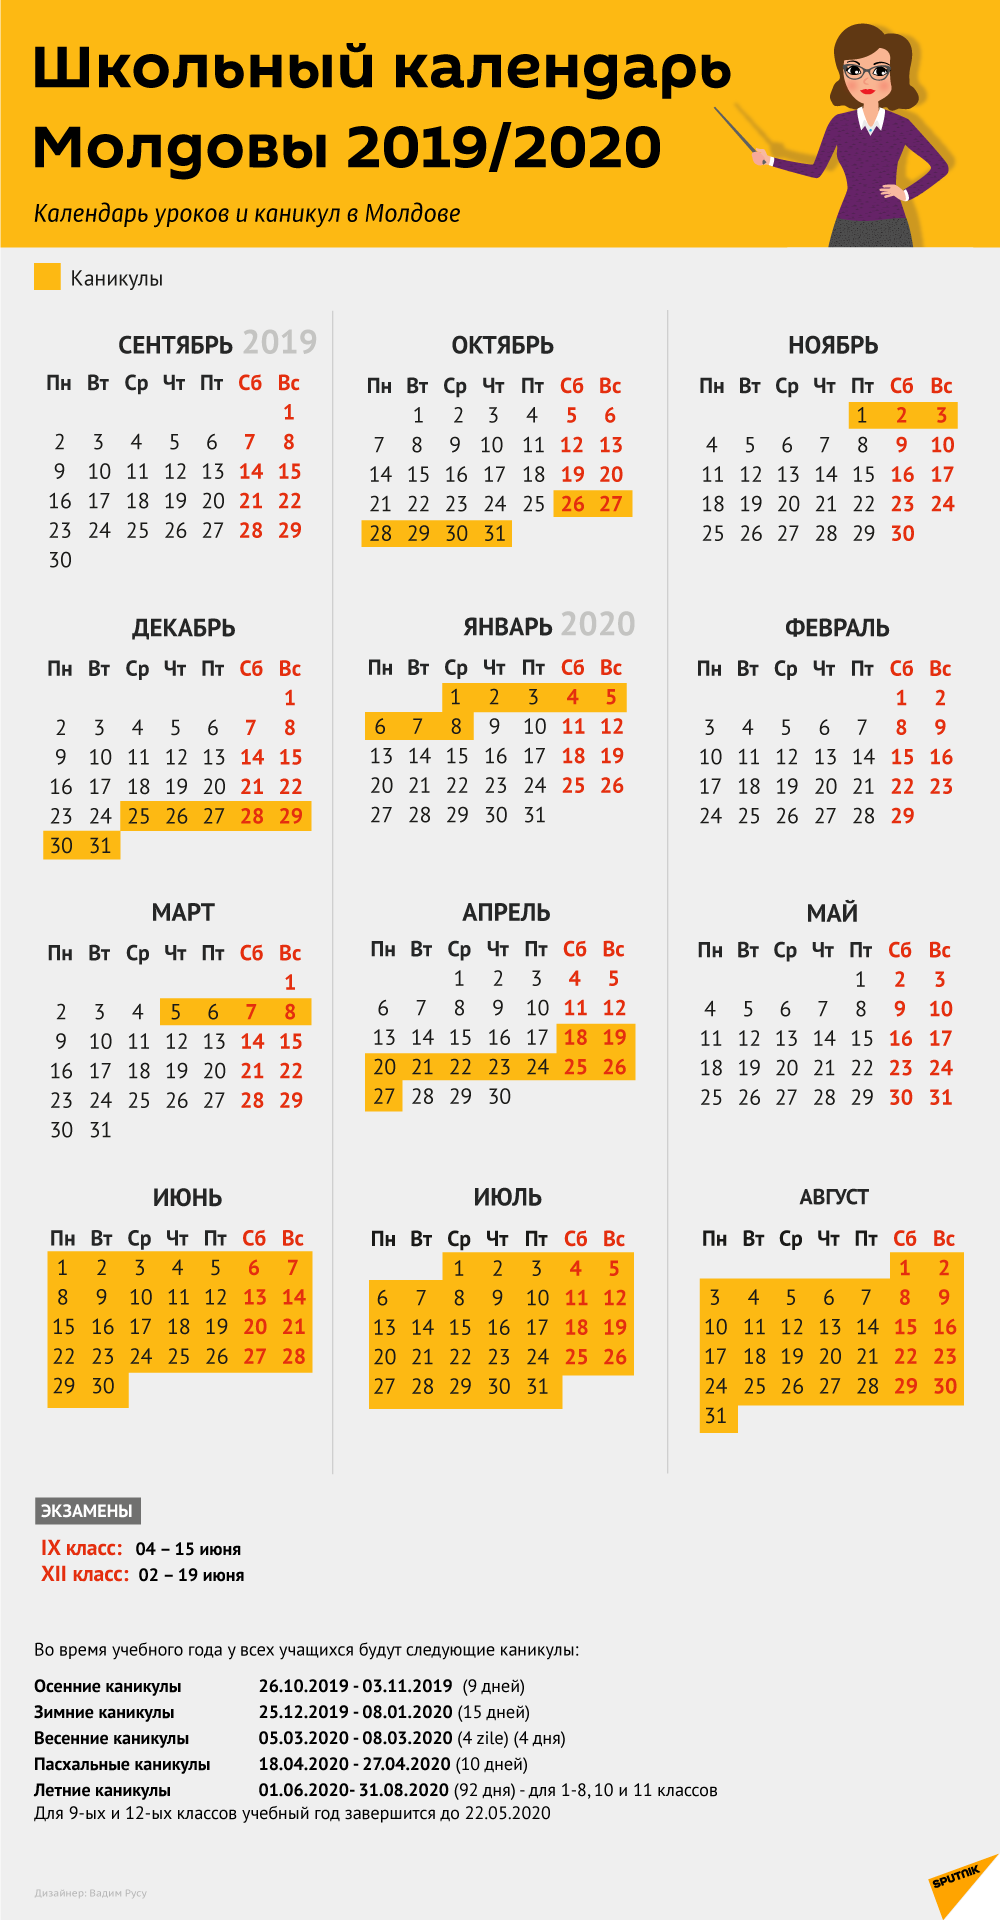 Школьный календарь 2019-2020: расписание экзаменов и каникул - 31.08.2019,  Sputnik Молдова